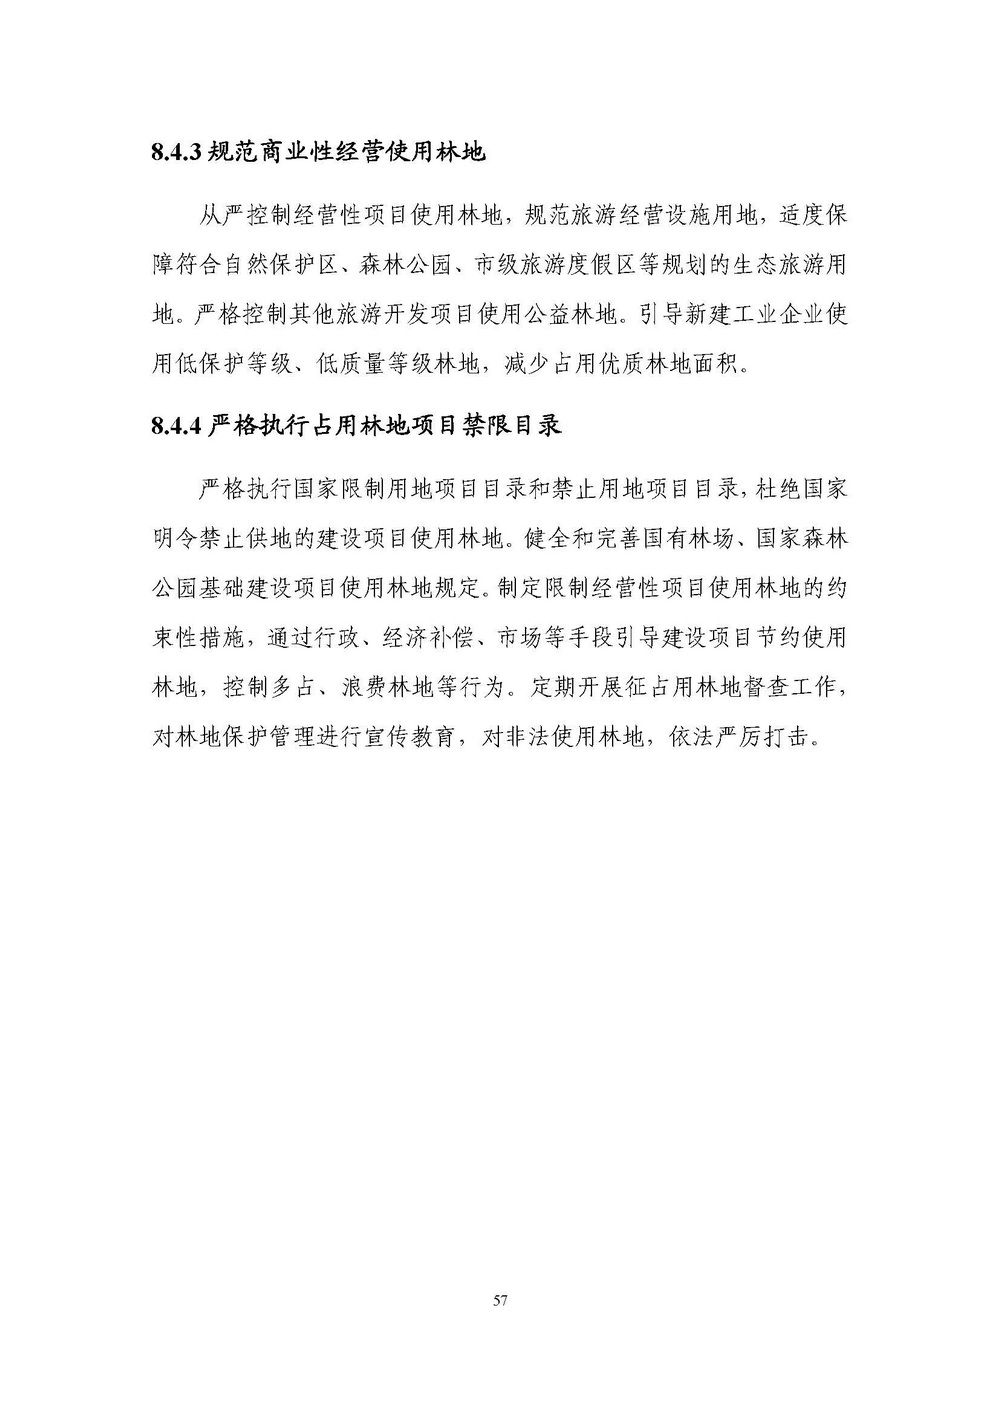 上海市森林和林地保护利用规划文本 公开稿 附图_页面_60.jpg